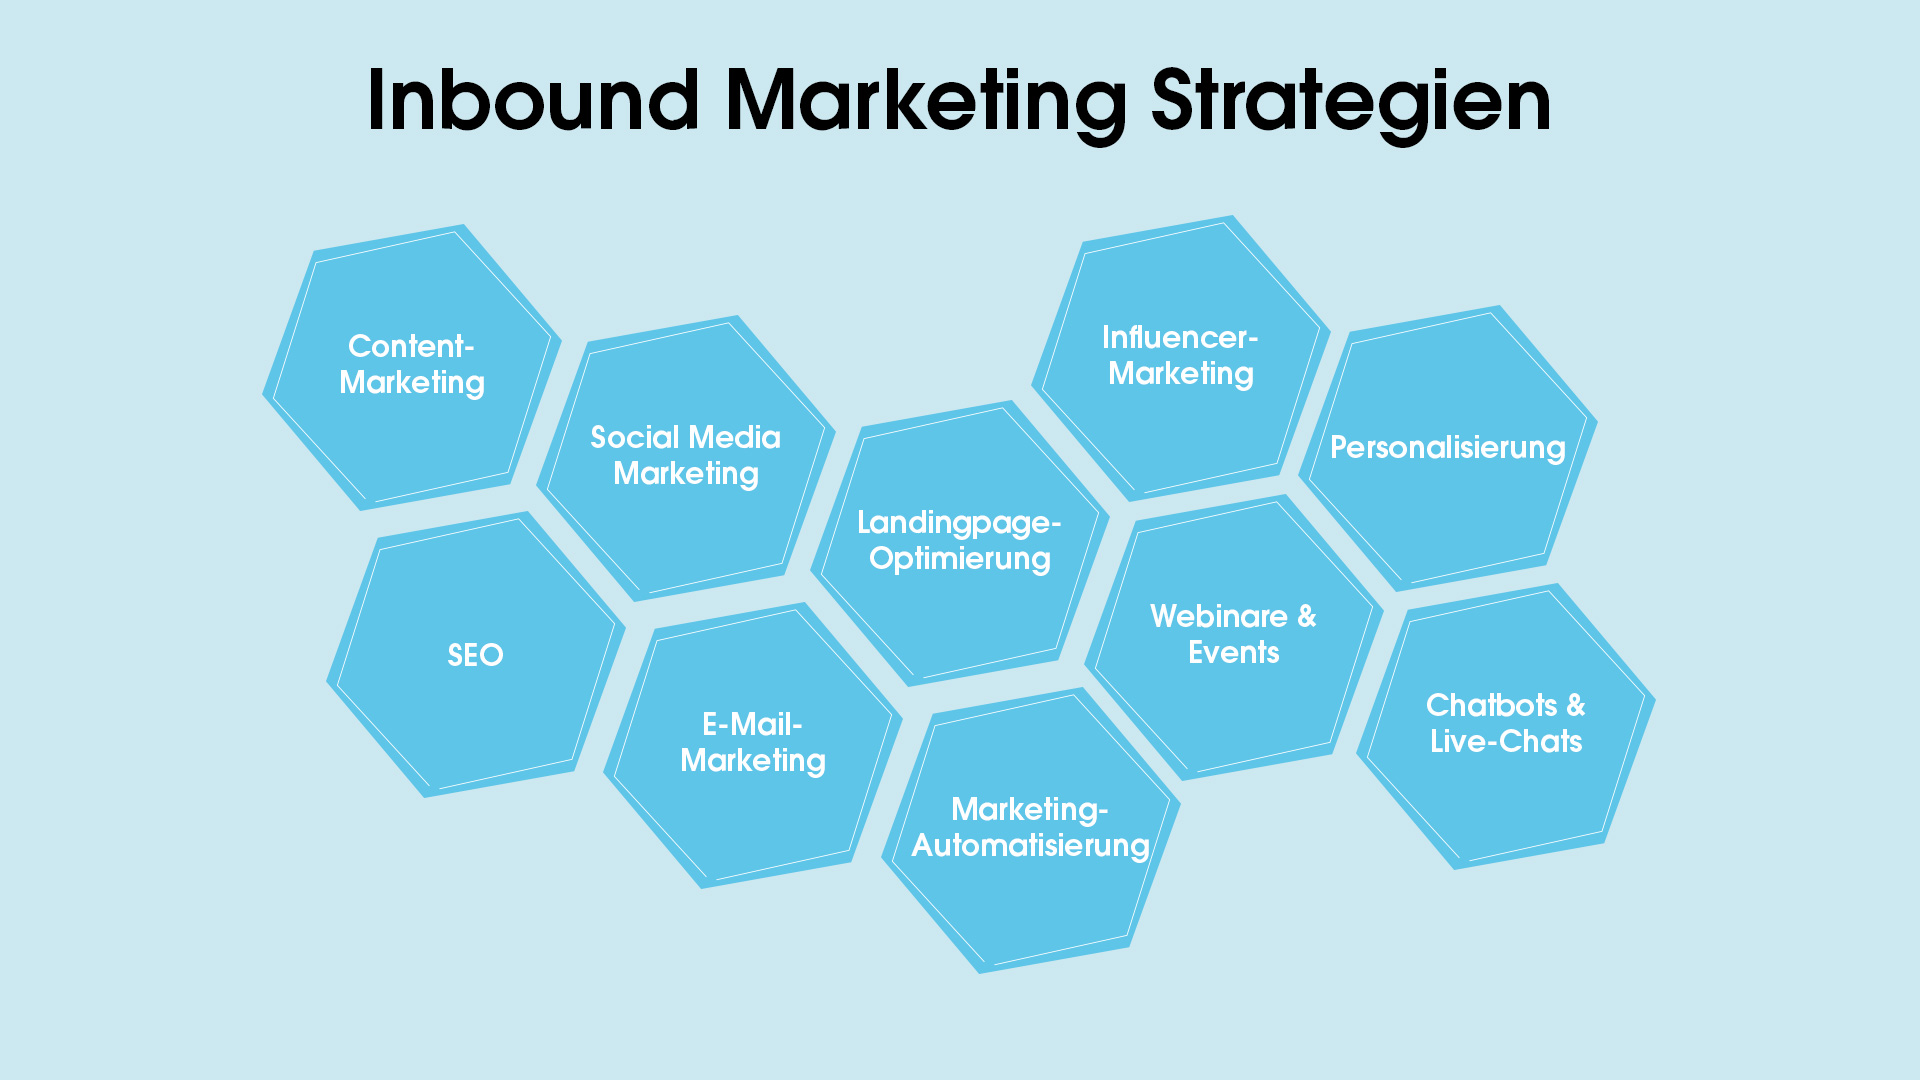 Abgebildet sind einige Inbound Marketing Strategien. Z. B. Content-Marketing, SEO, E-Mail Marketing usw.